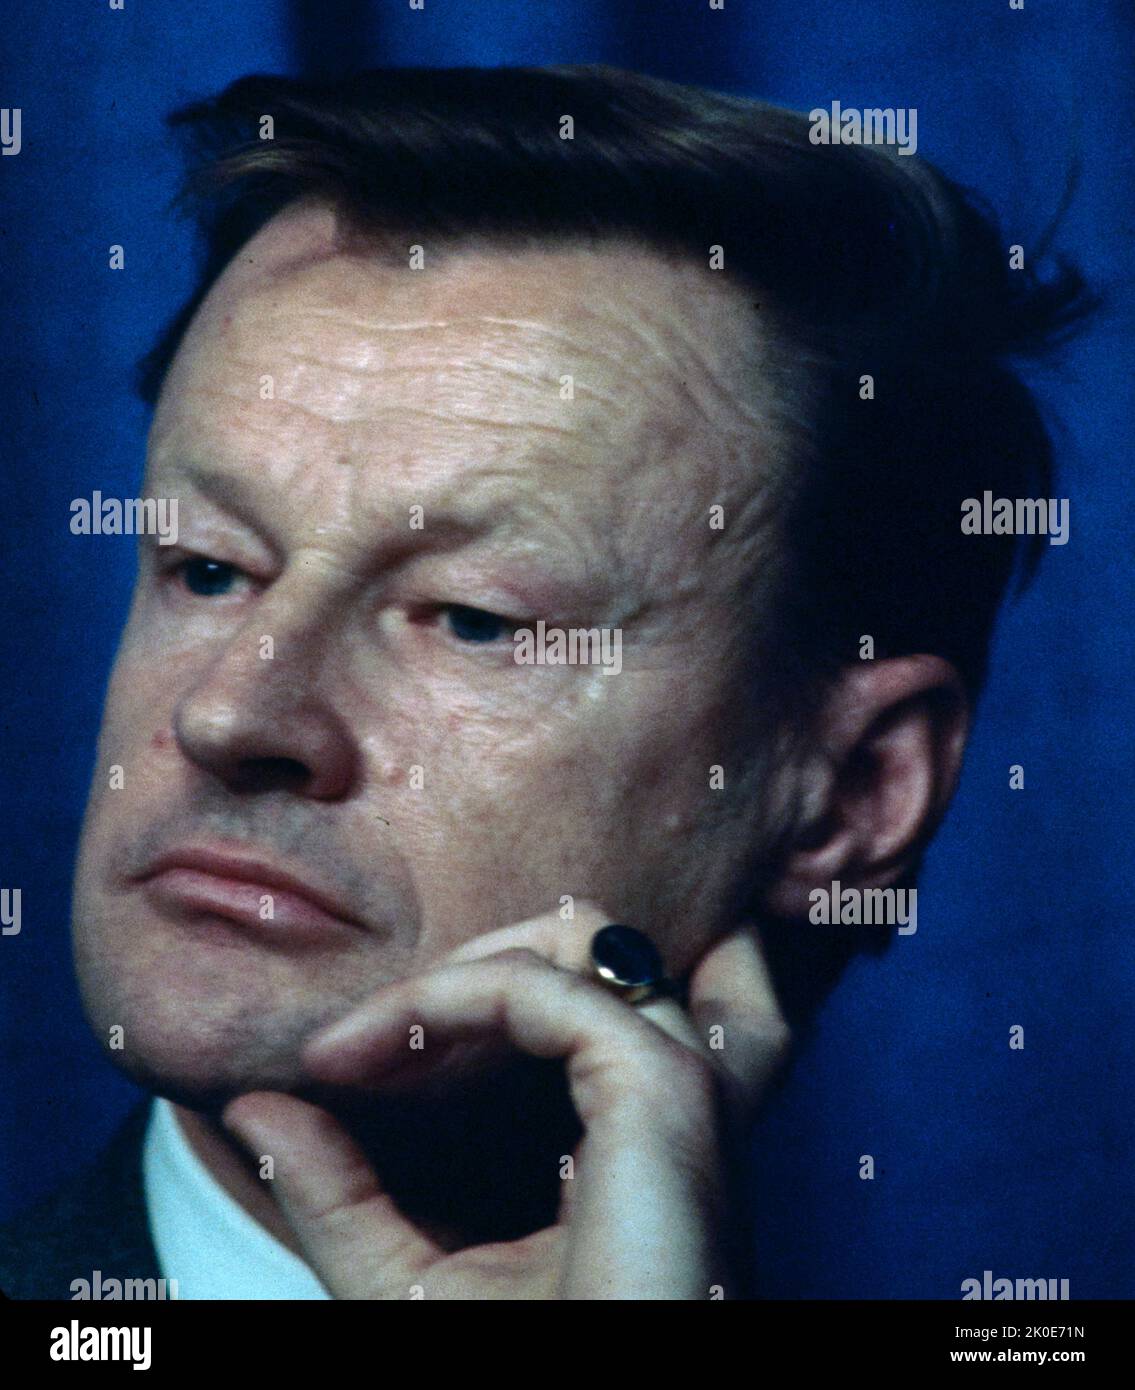 Zbigniew Kazimierz Brzezinski (1928 - 2017) diplomatico e scienziato politico polacco-americano. Dal 1966 al 1968 è stato consigliere del presidente Lyndon B. Johnson ed è stato consigliere per la sicurezza nazionale del presidente Jimmy carter dal 1977 al 1981. Foto Stock